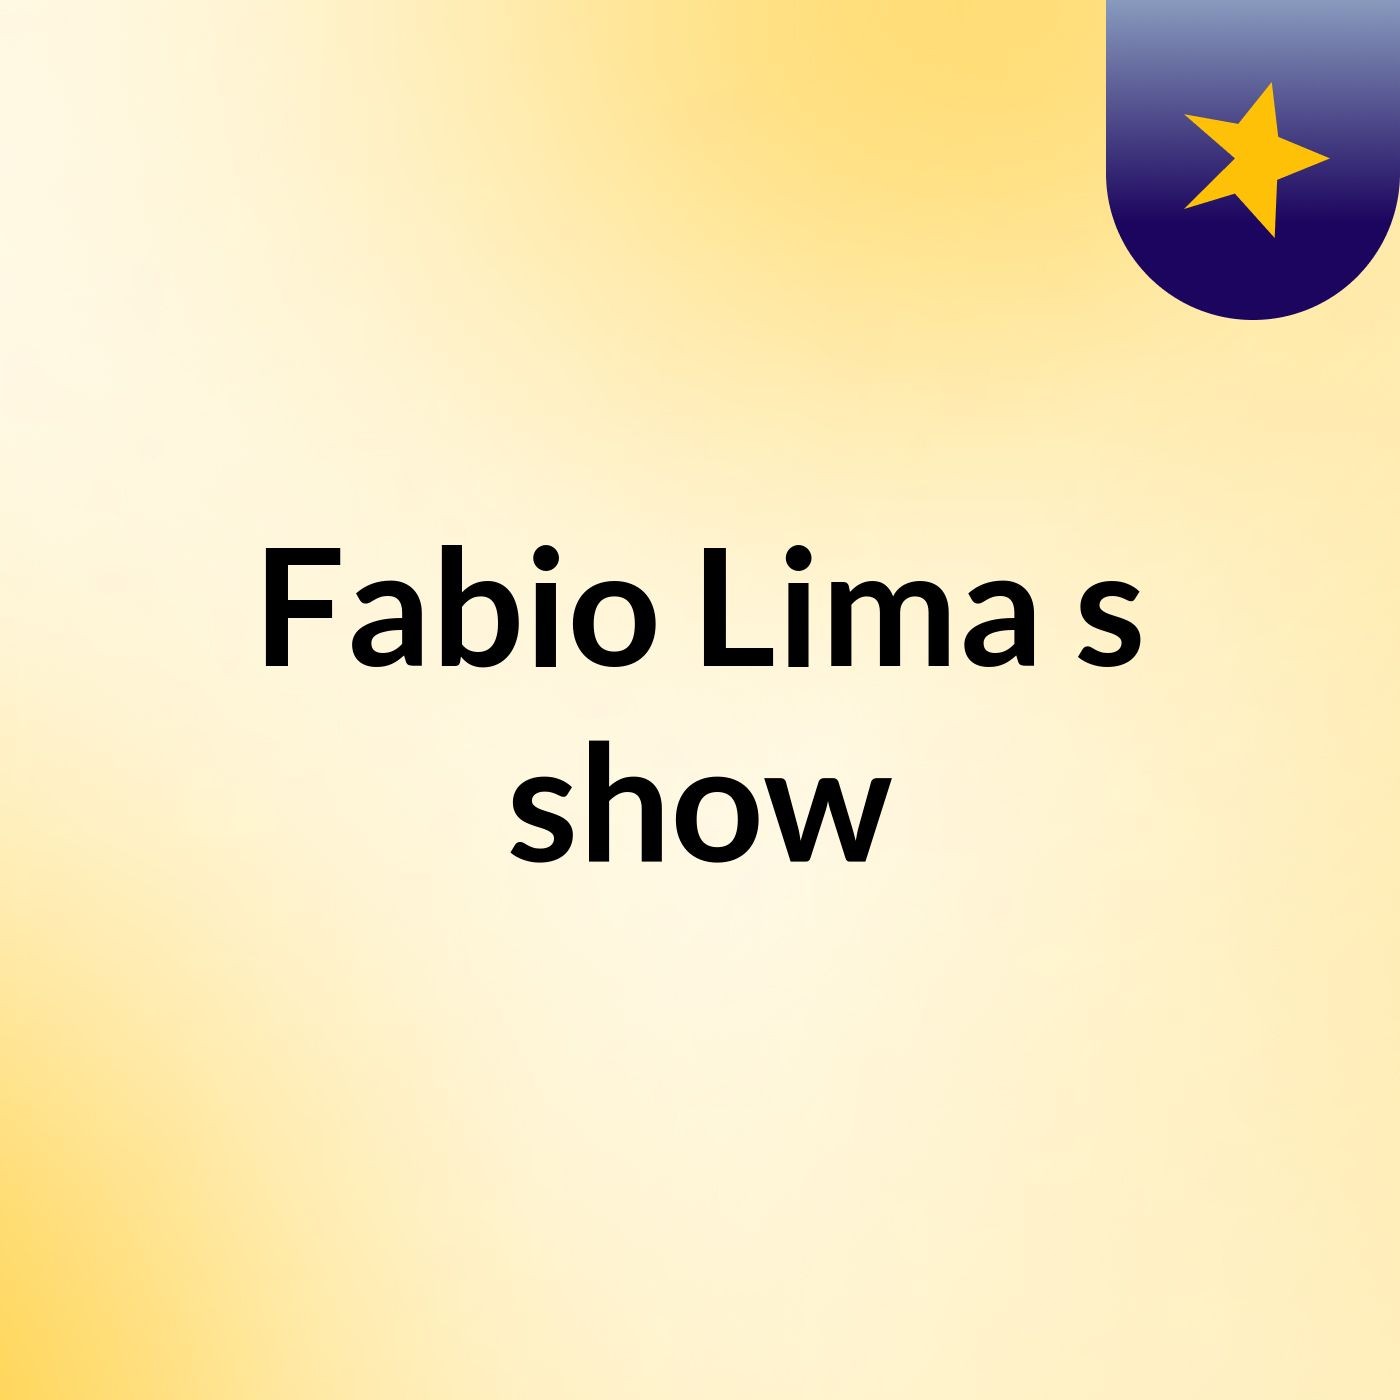 Fabio Lima's show